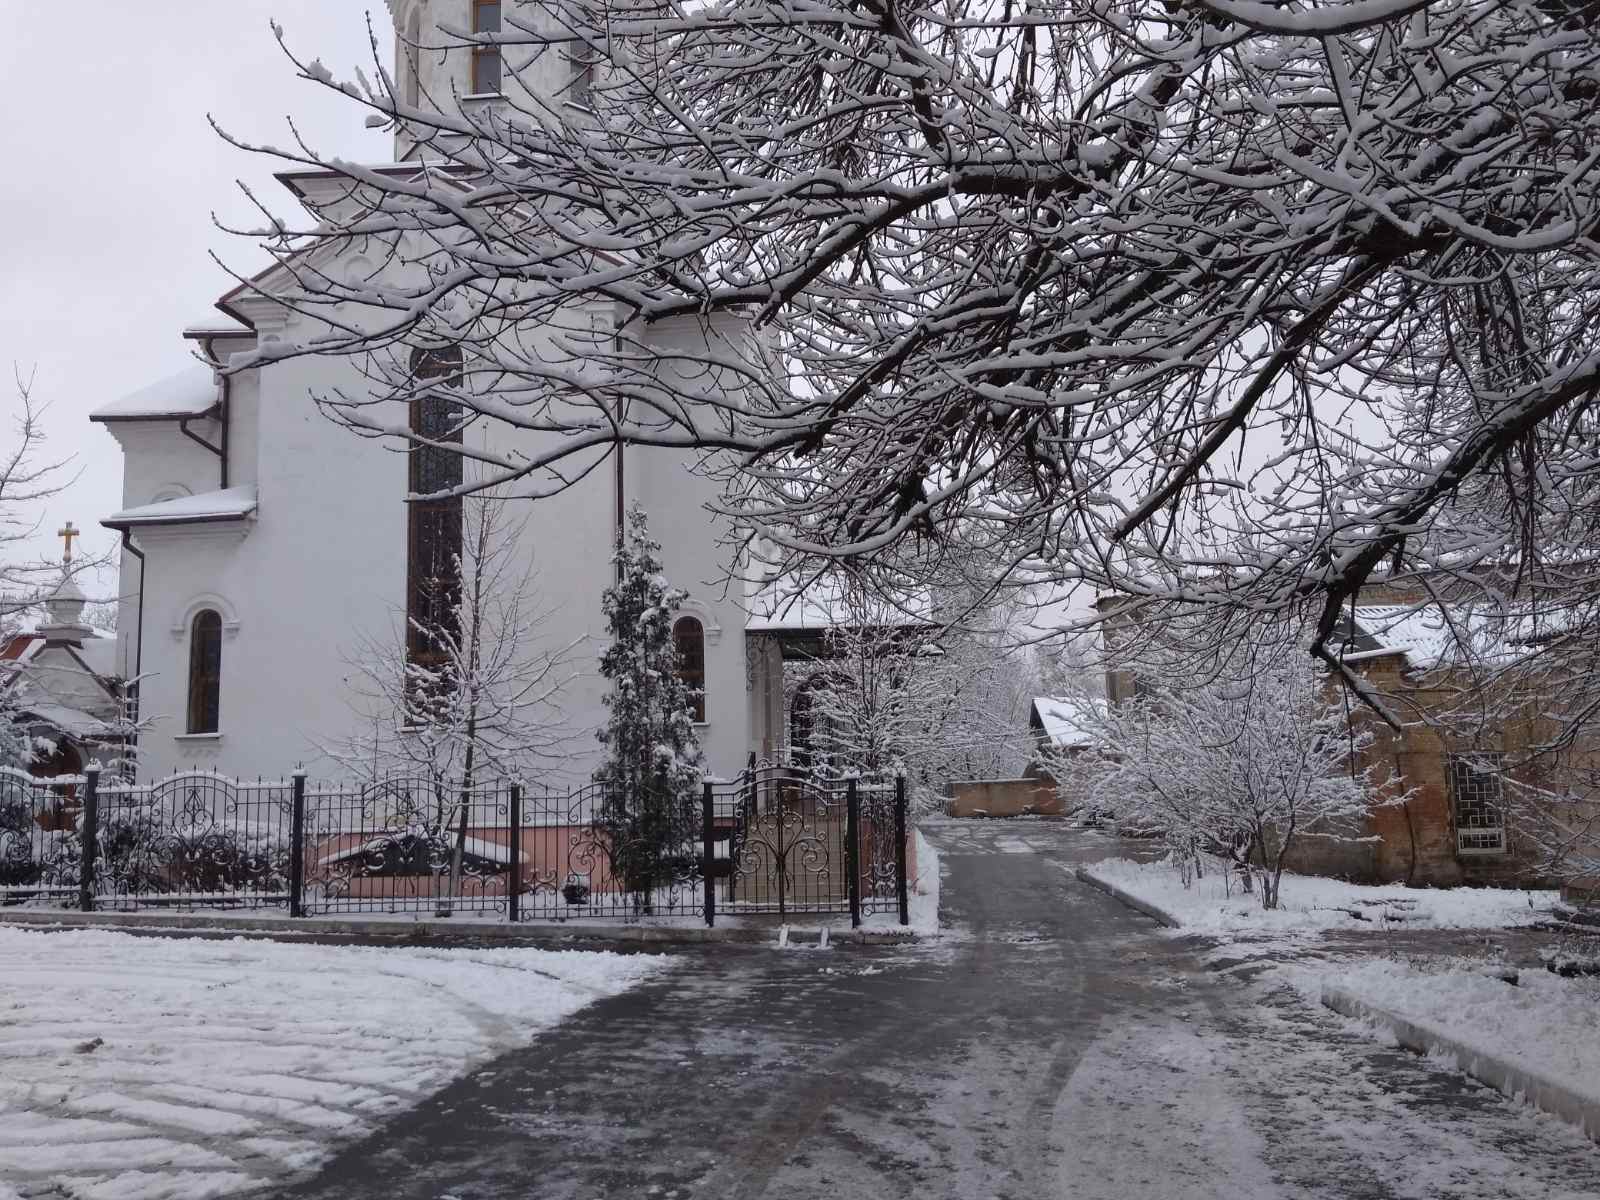 Праздник Рождества Христова в Свято-Вонифатьевском храме. 7 января 2020 года.